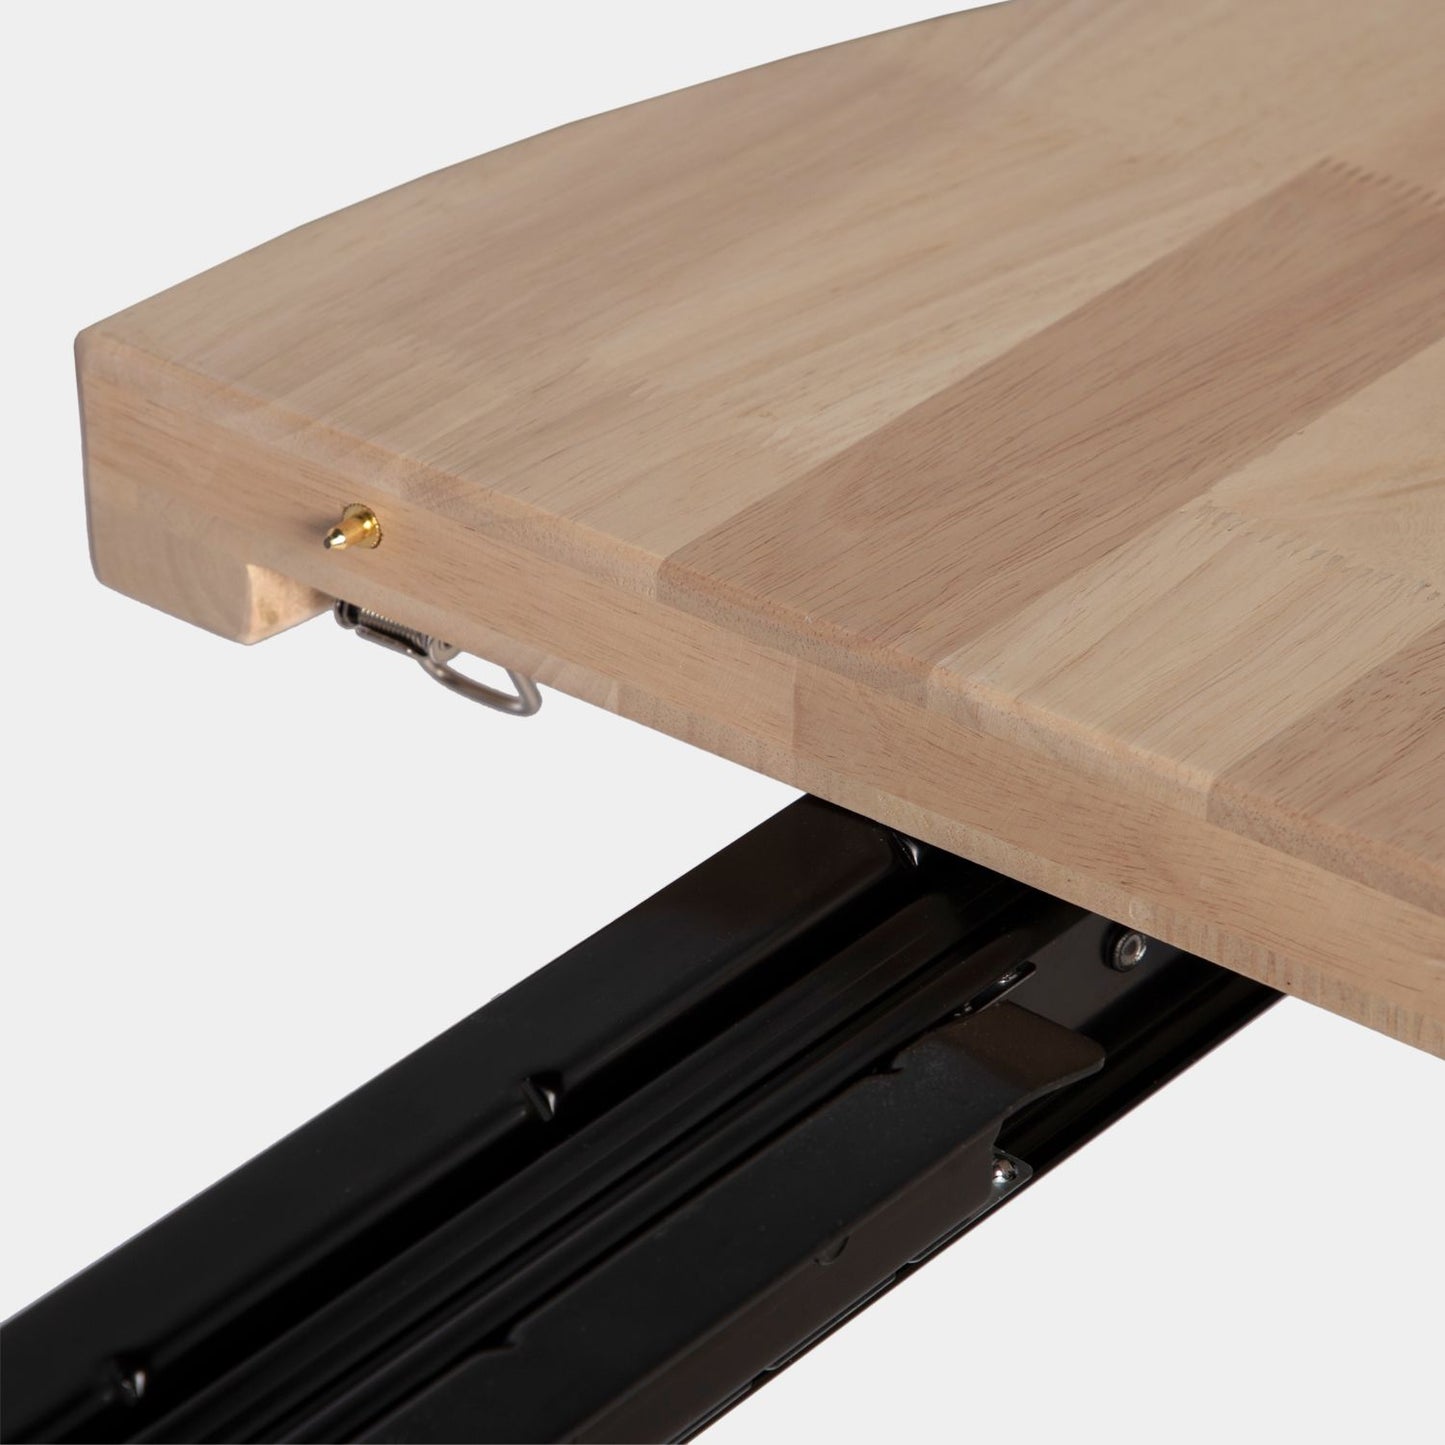 Mesa de comedor redonda extensible 100/180 en madera de roble con pata blanca Anais -  Klast